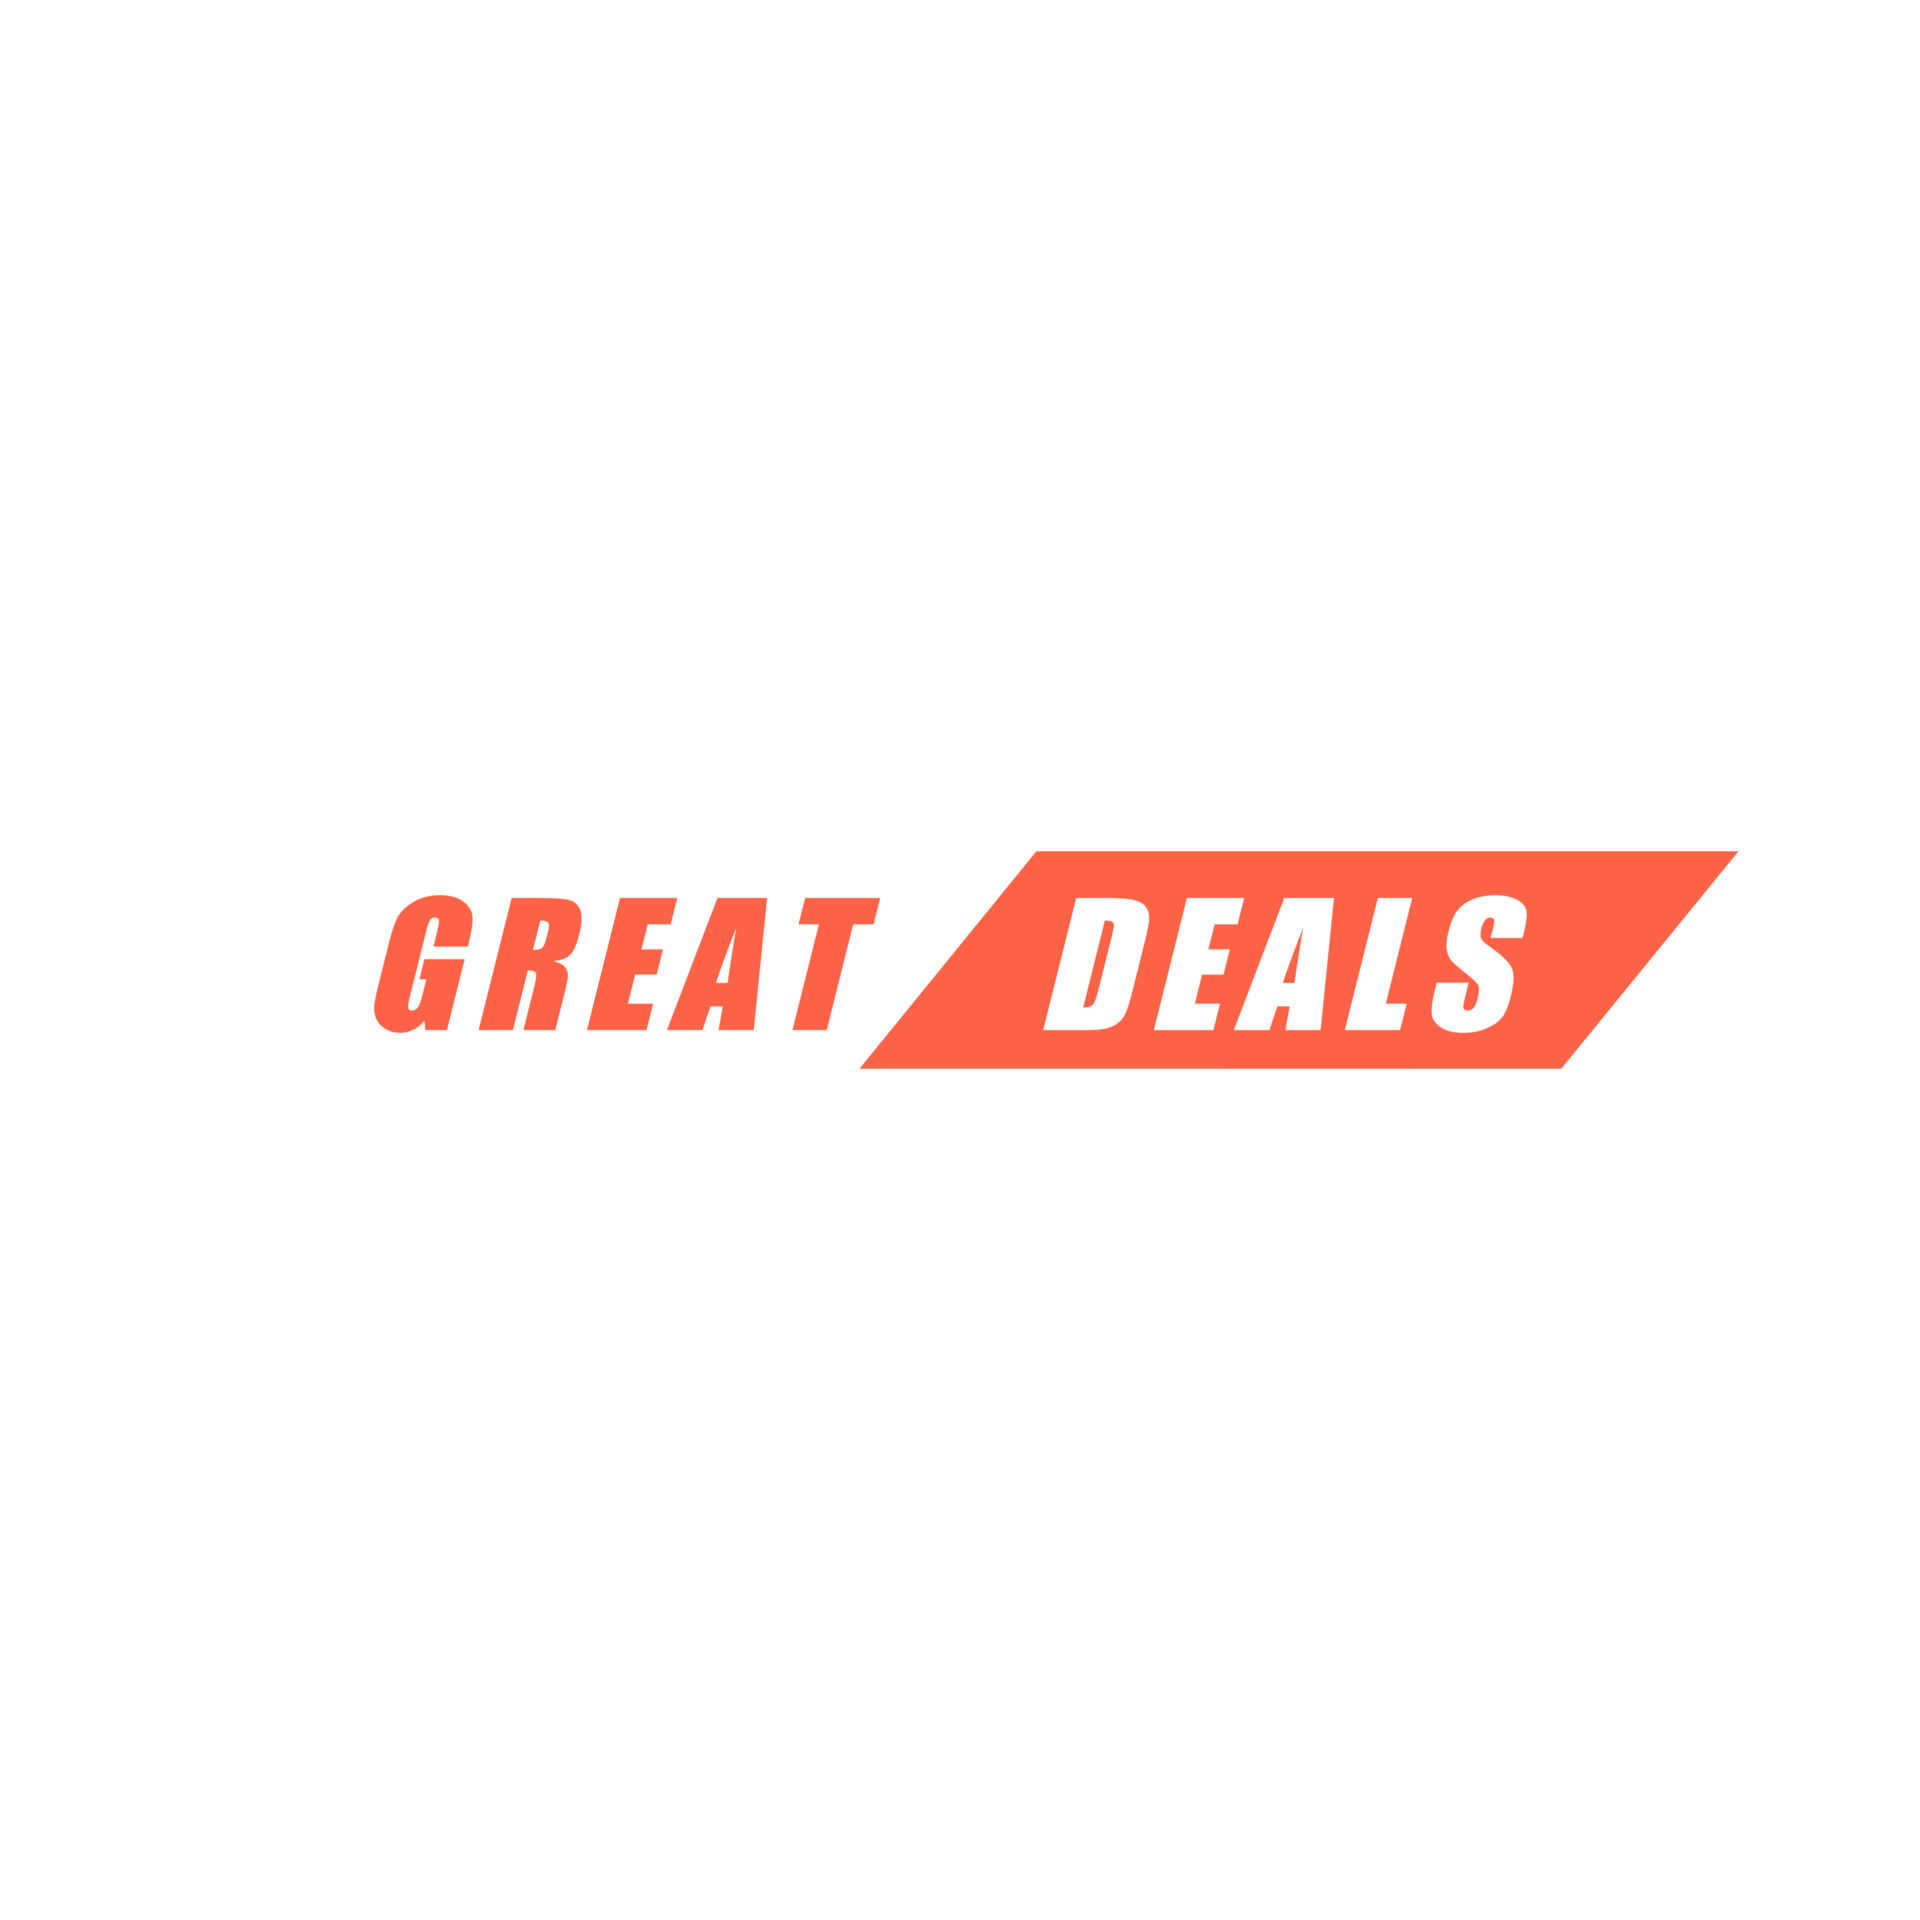 Great Deals!